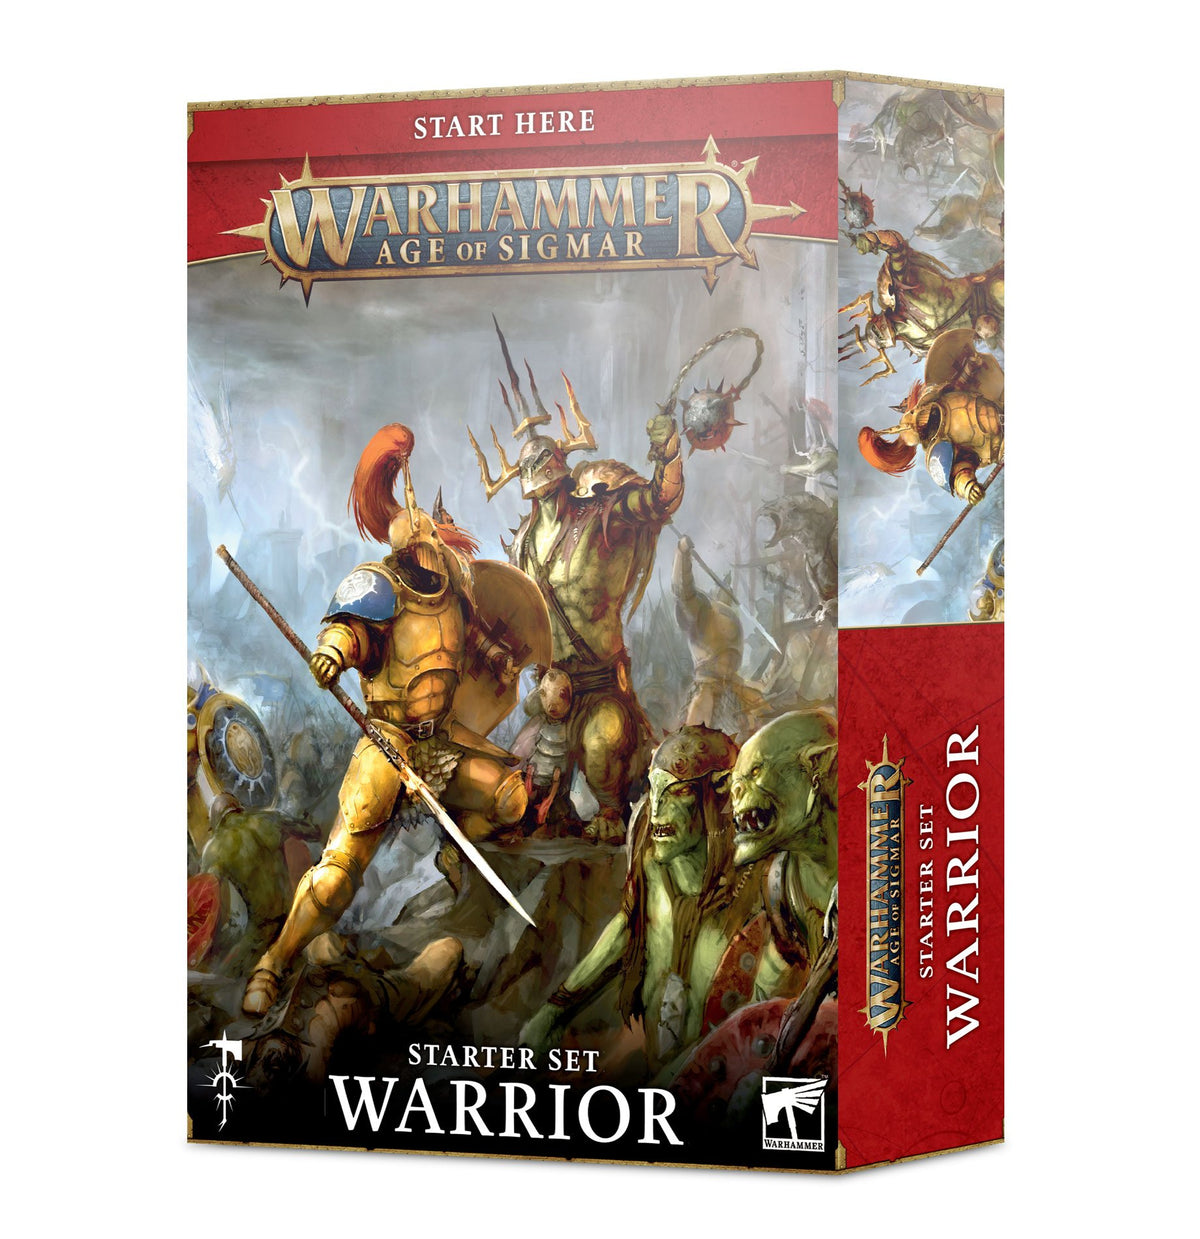 Starter Set - Warrior (Warhammer Age of Sigmar)